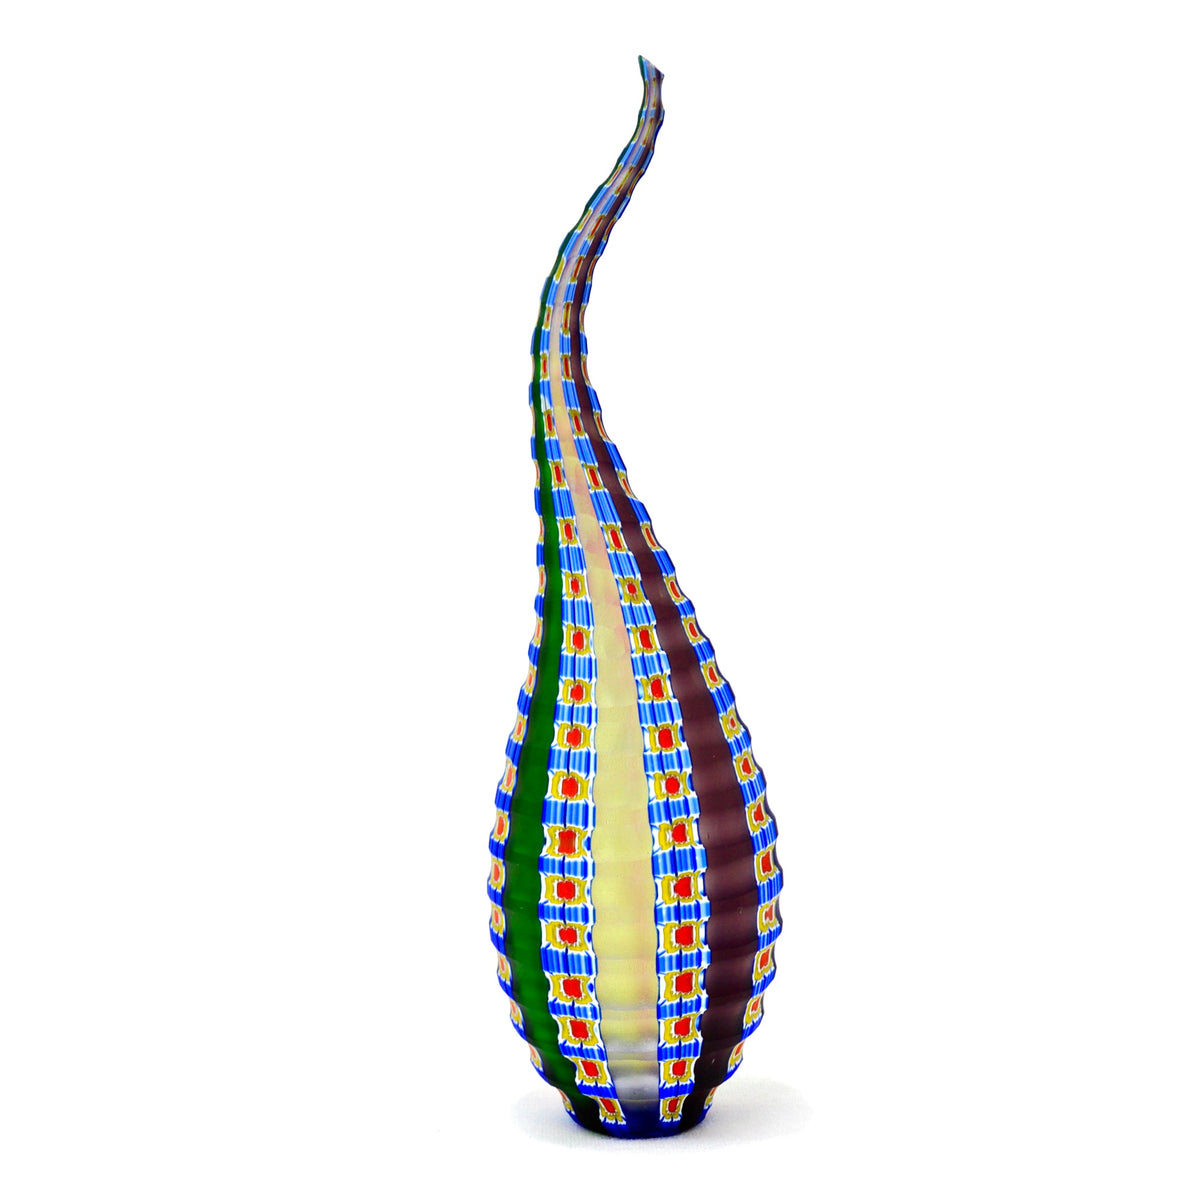 Murano Glass Contemporary Art Vessel, Made In Italy - My Italian Decor